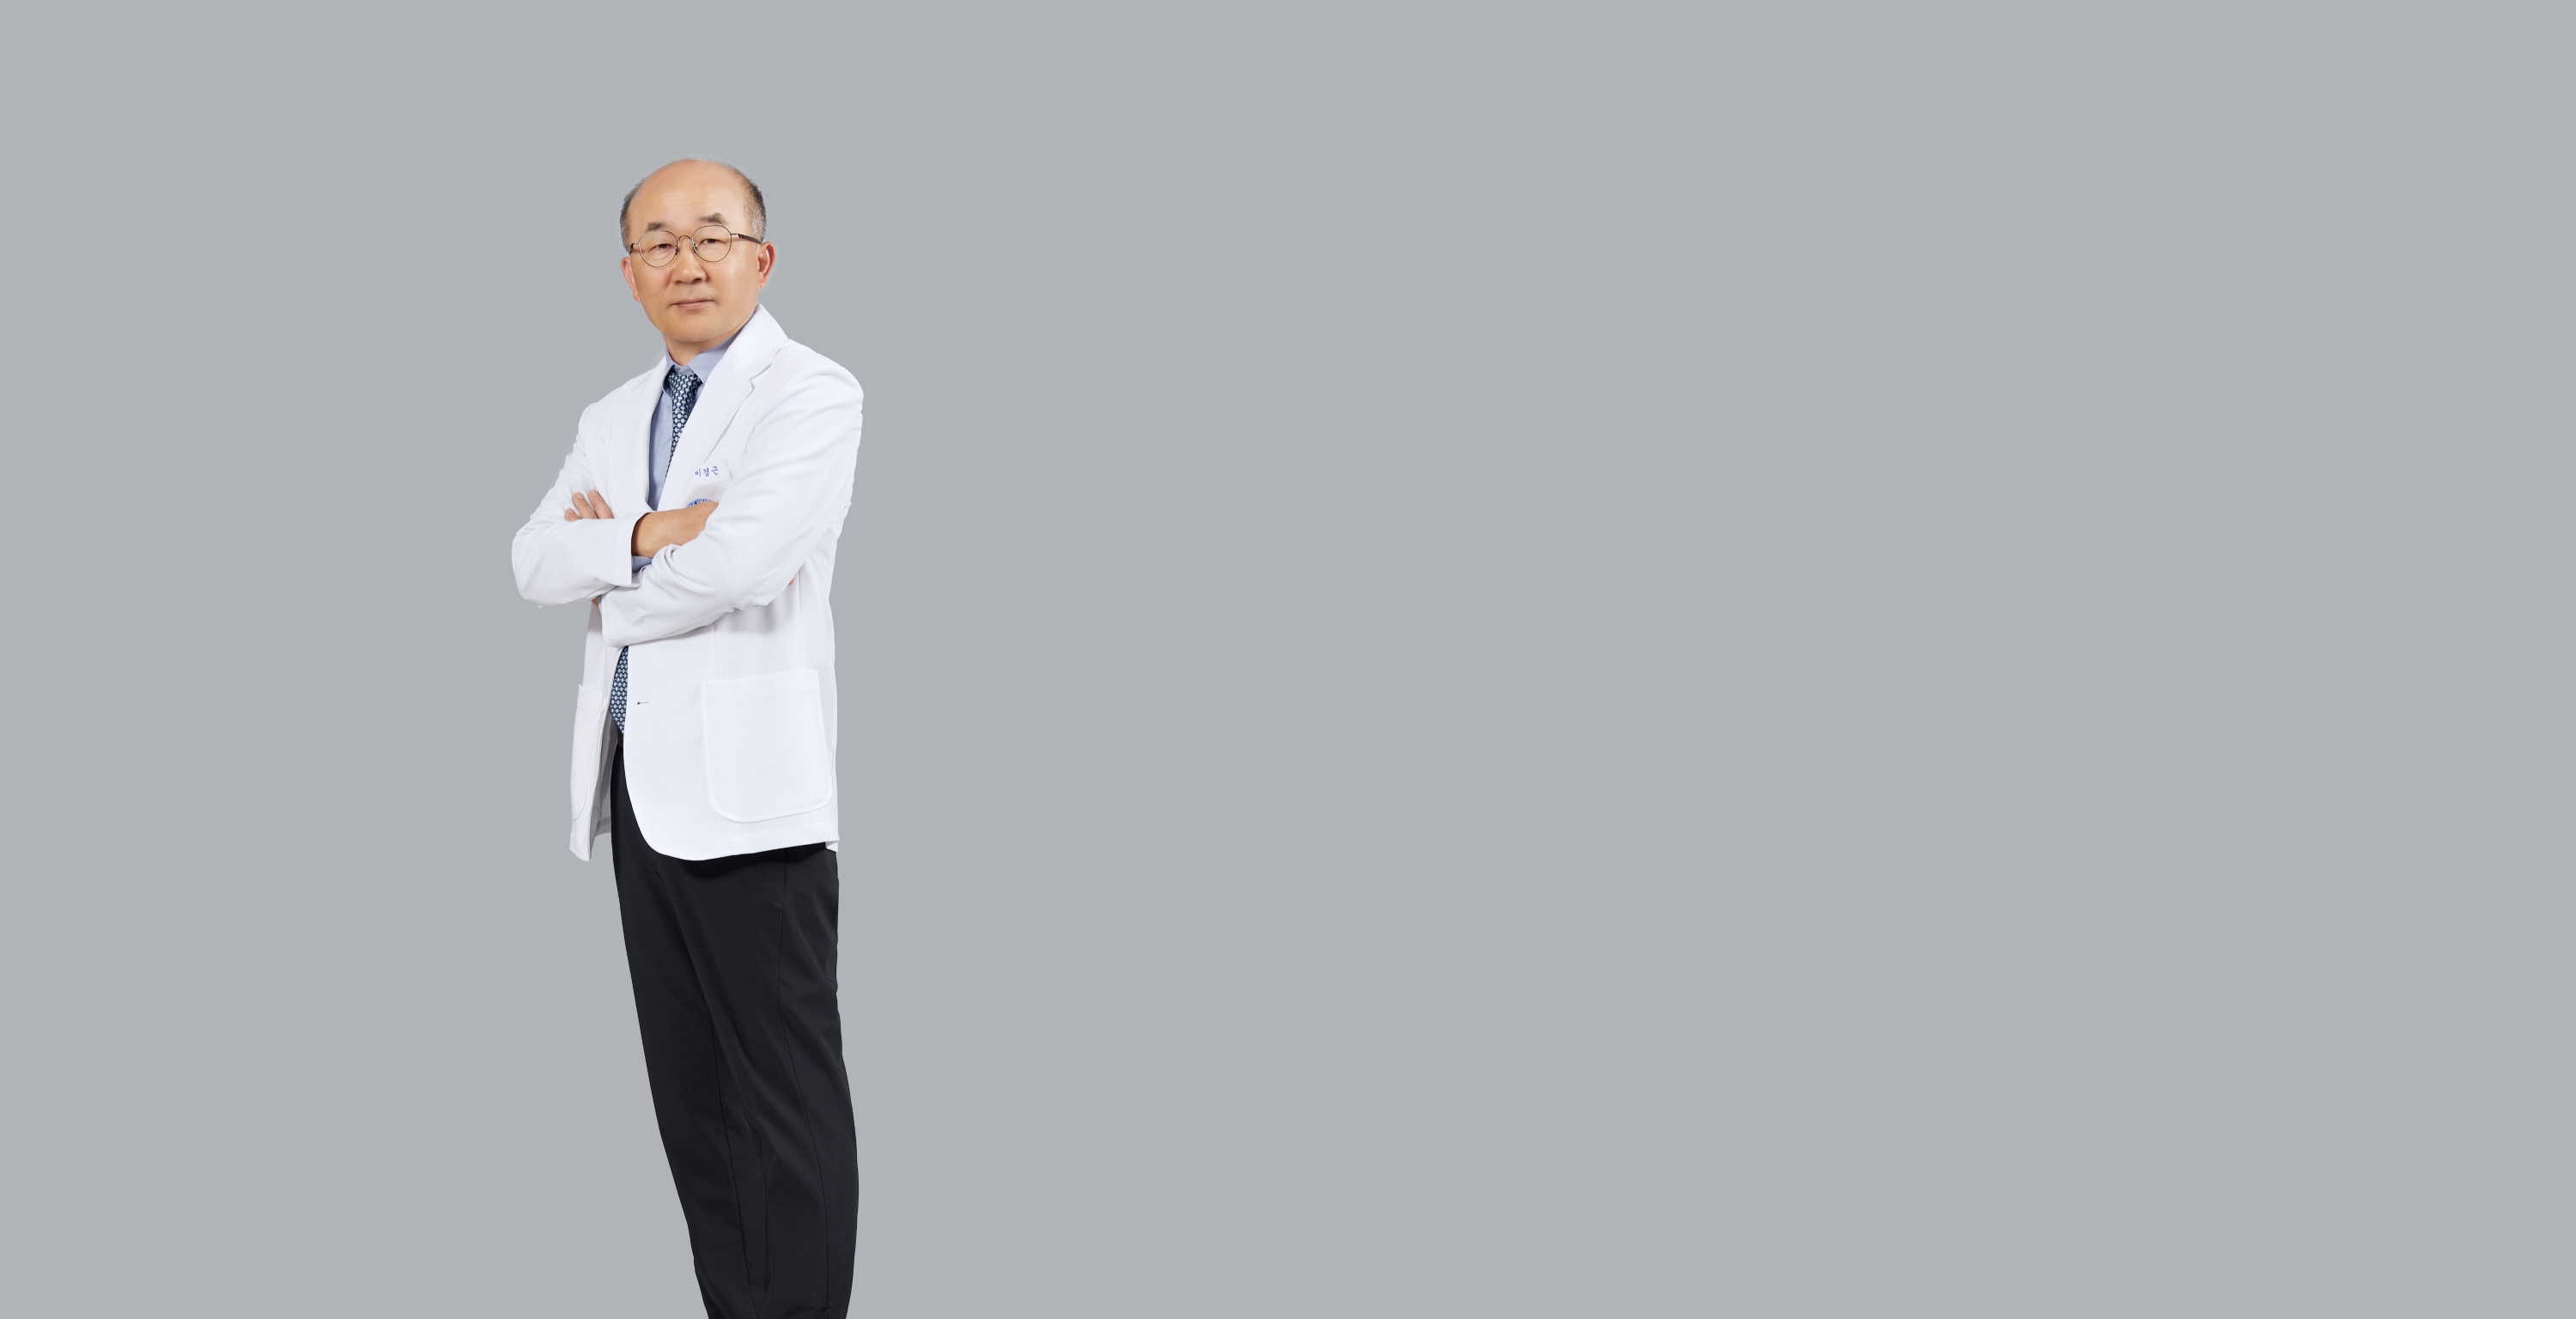 General Surgery - Lee, Kyeong Geun